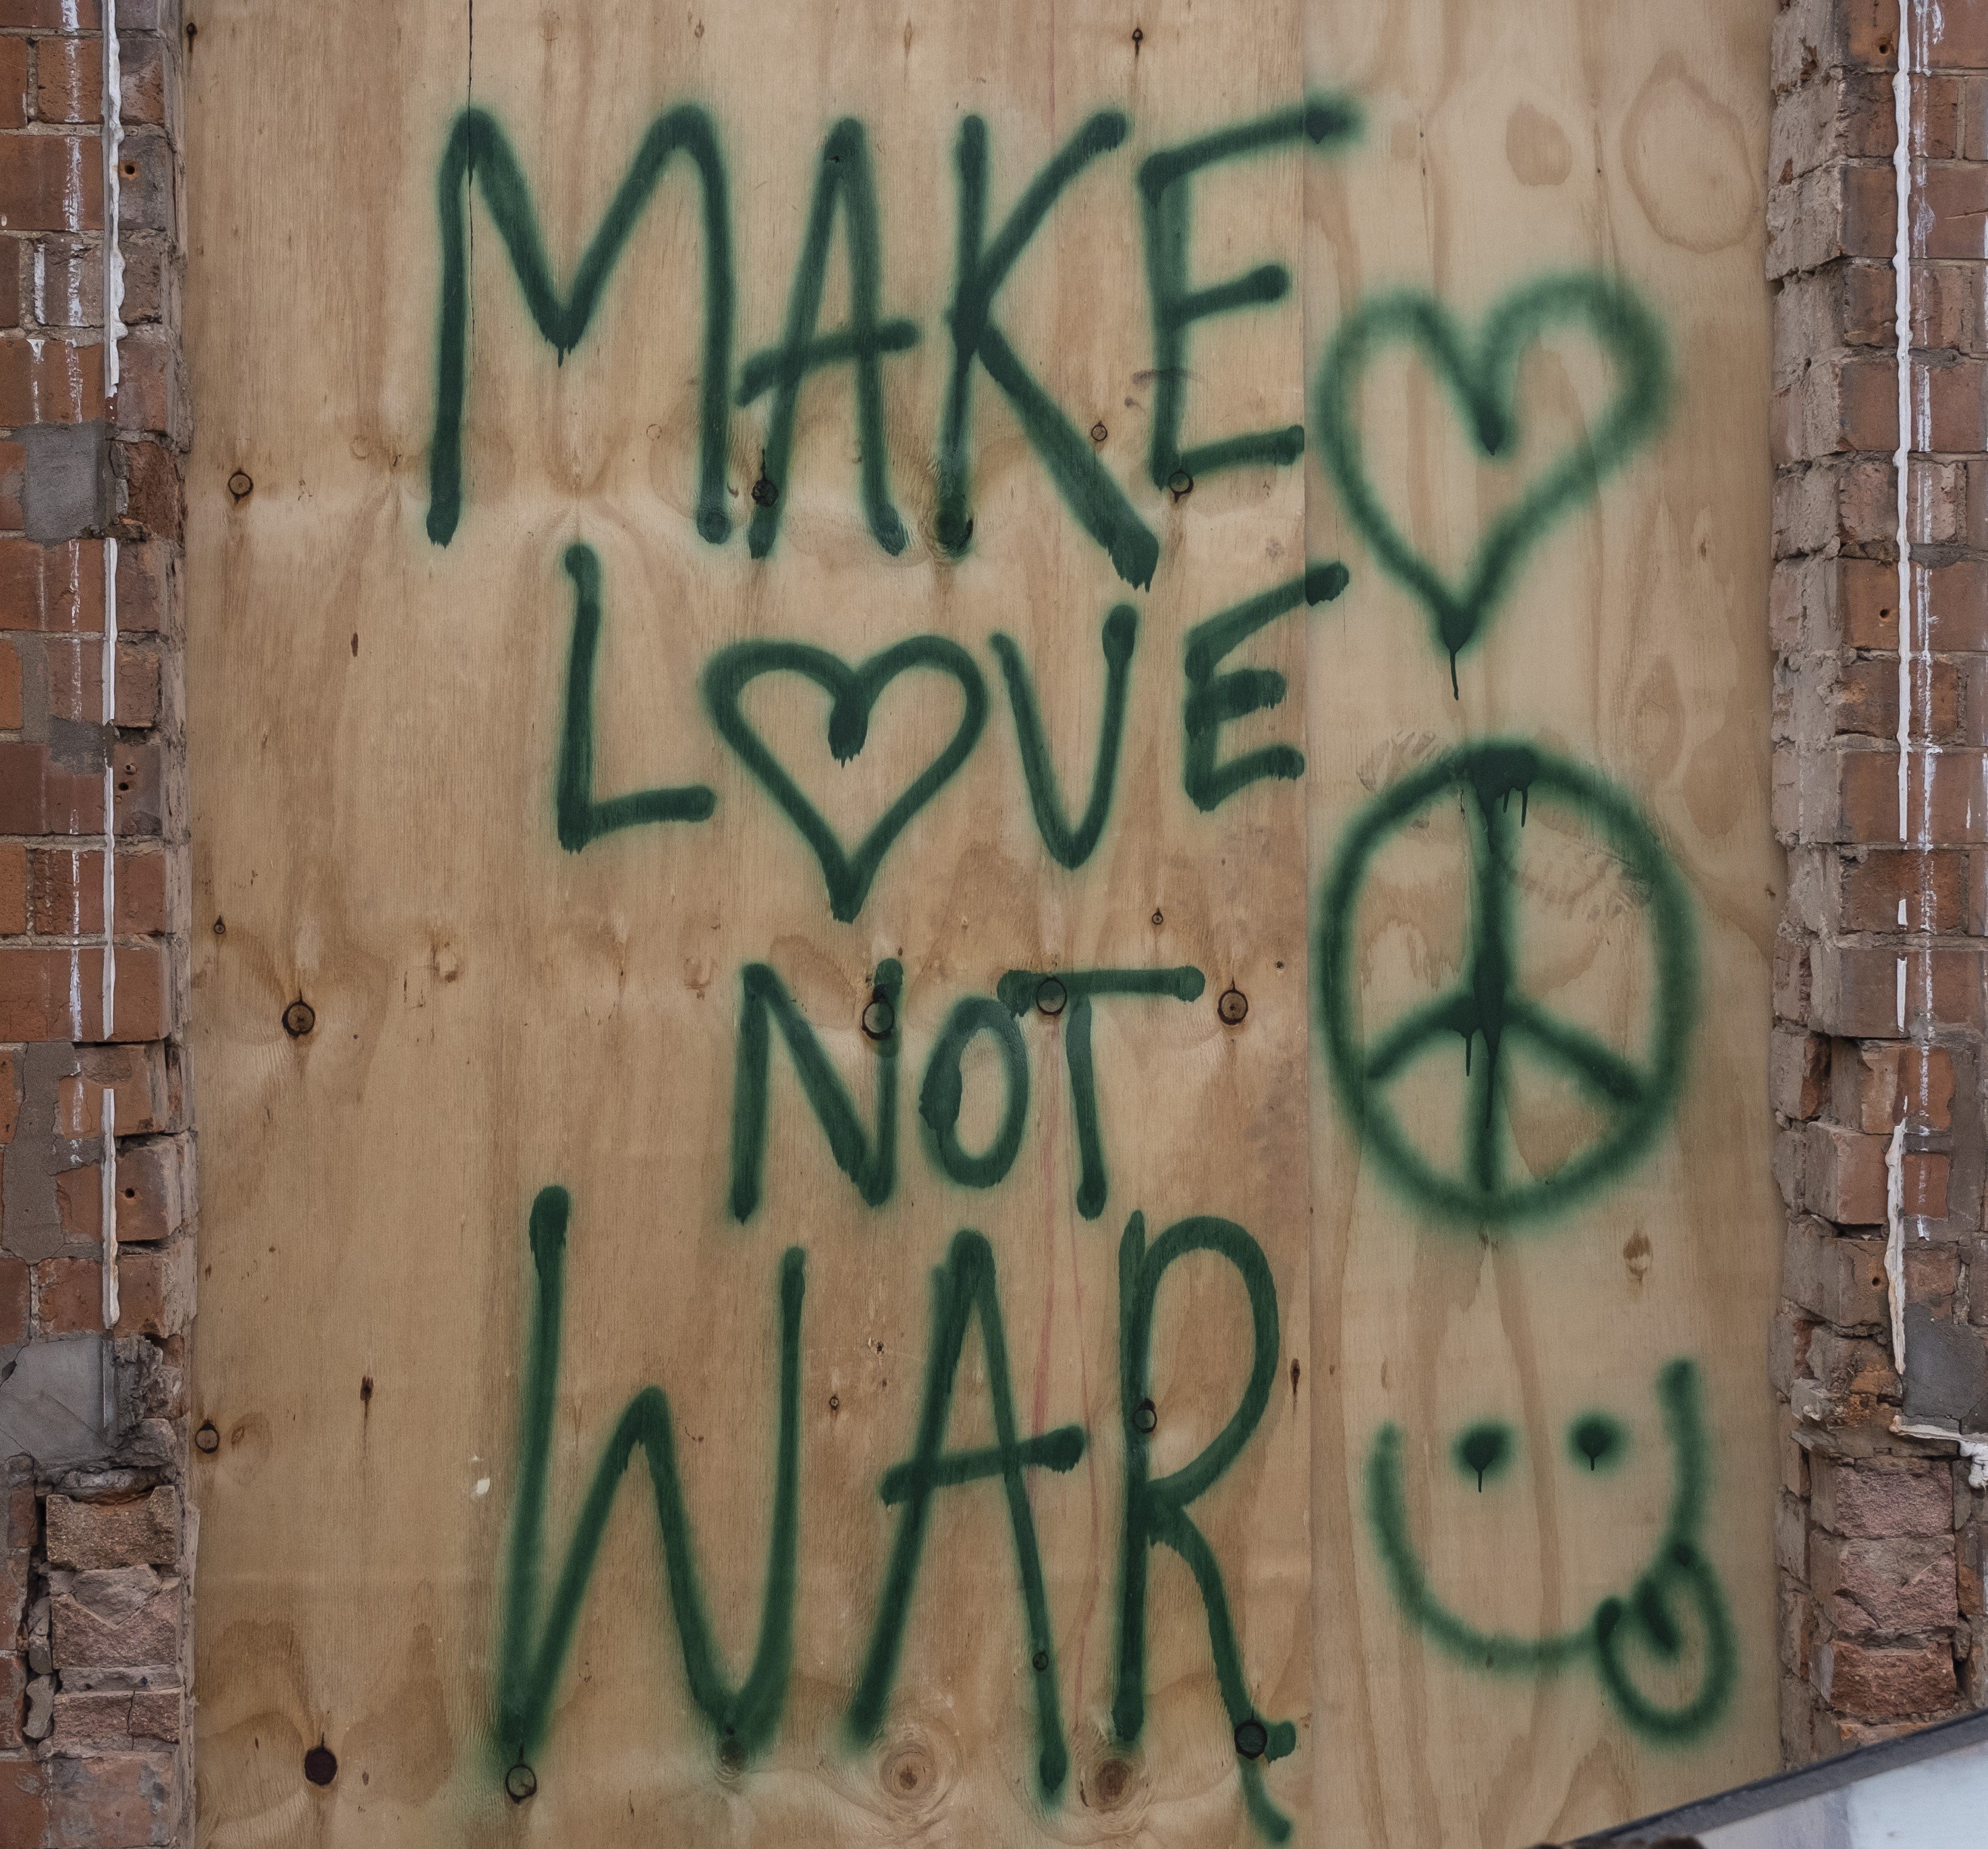 Graffiti reading "Make Love Not War" near a peace sign